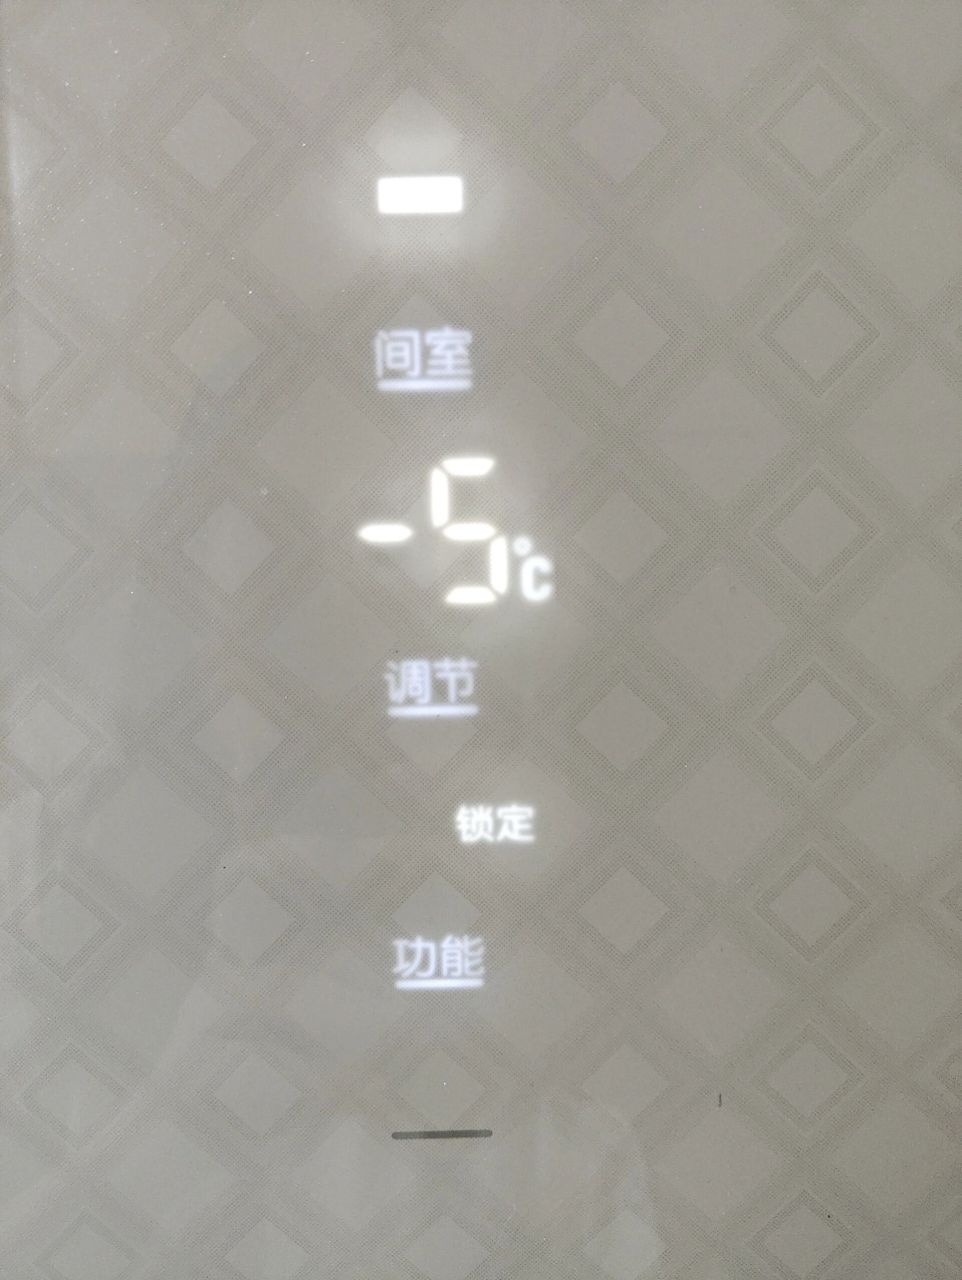 新飞冰箱怎么调节温度啊 新飞冰箱型号bcd221emg3a,摁了半天没有反应